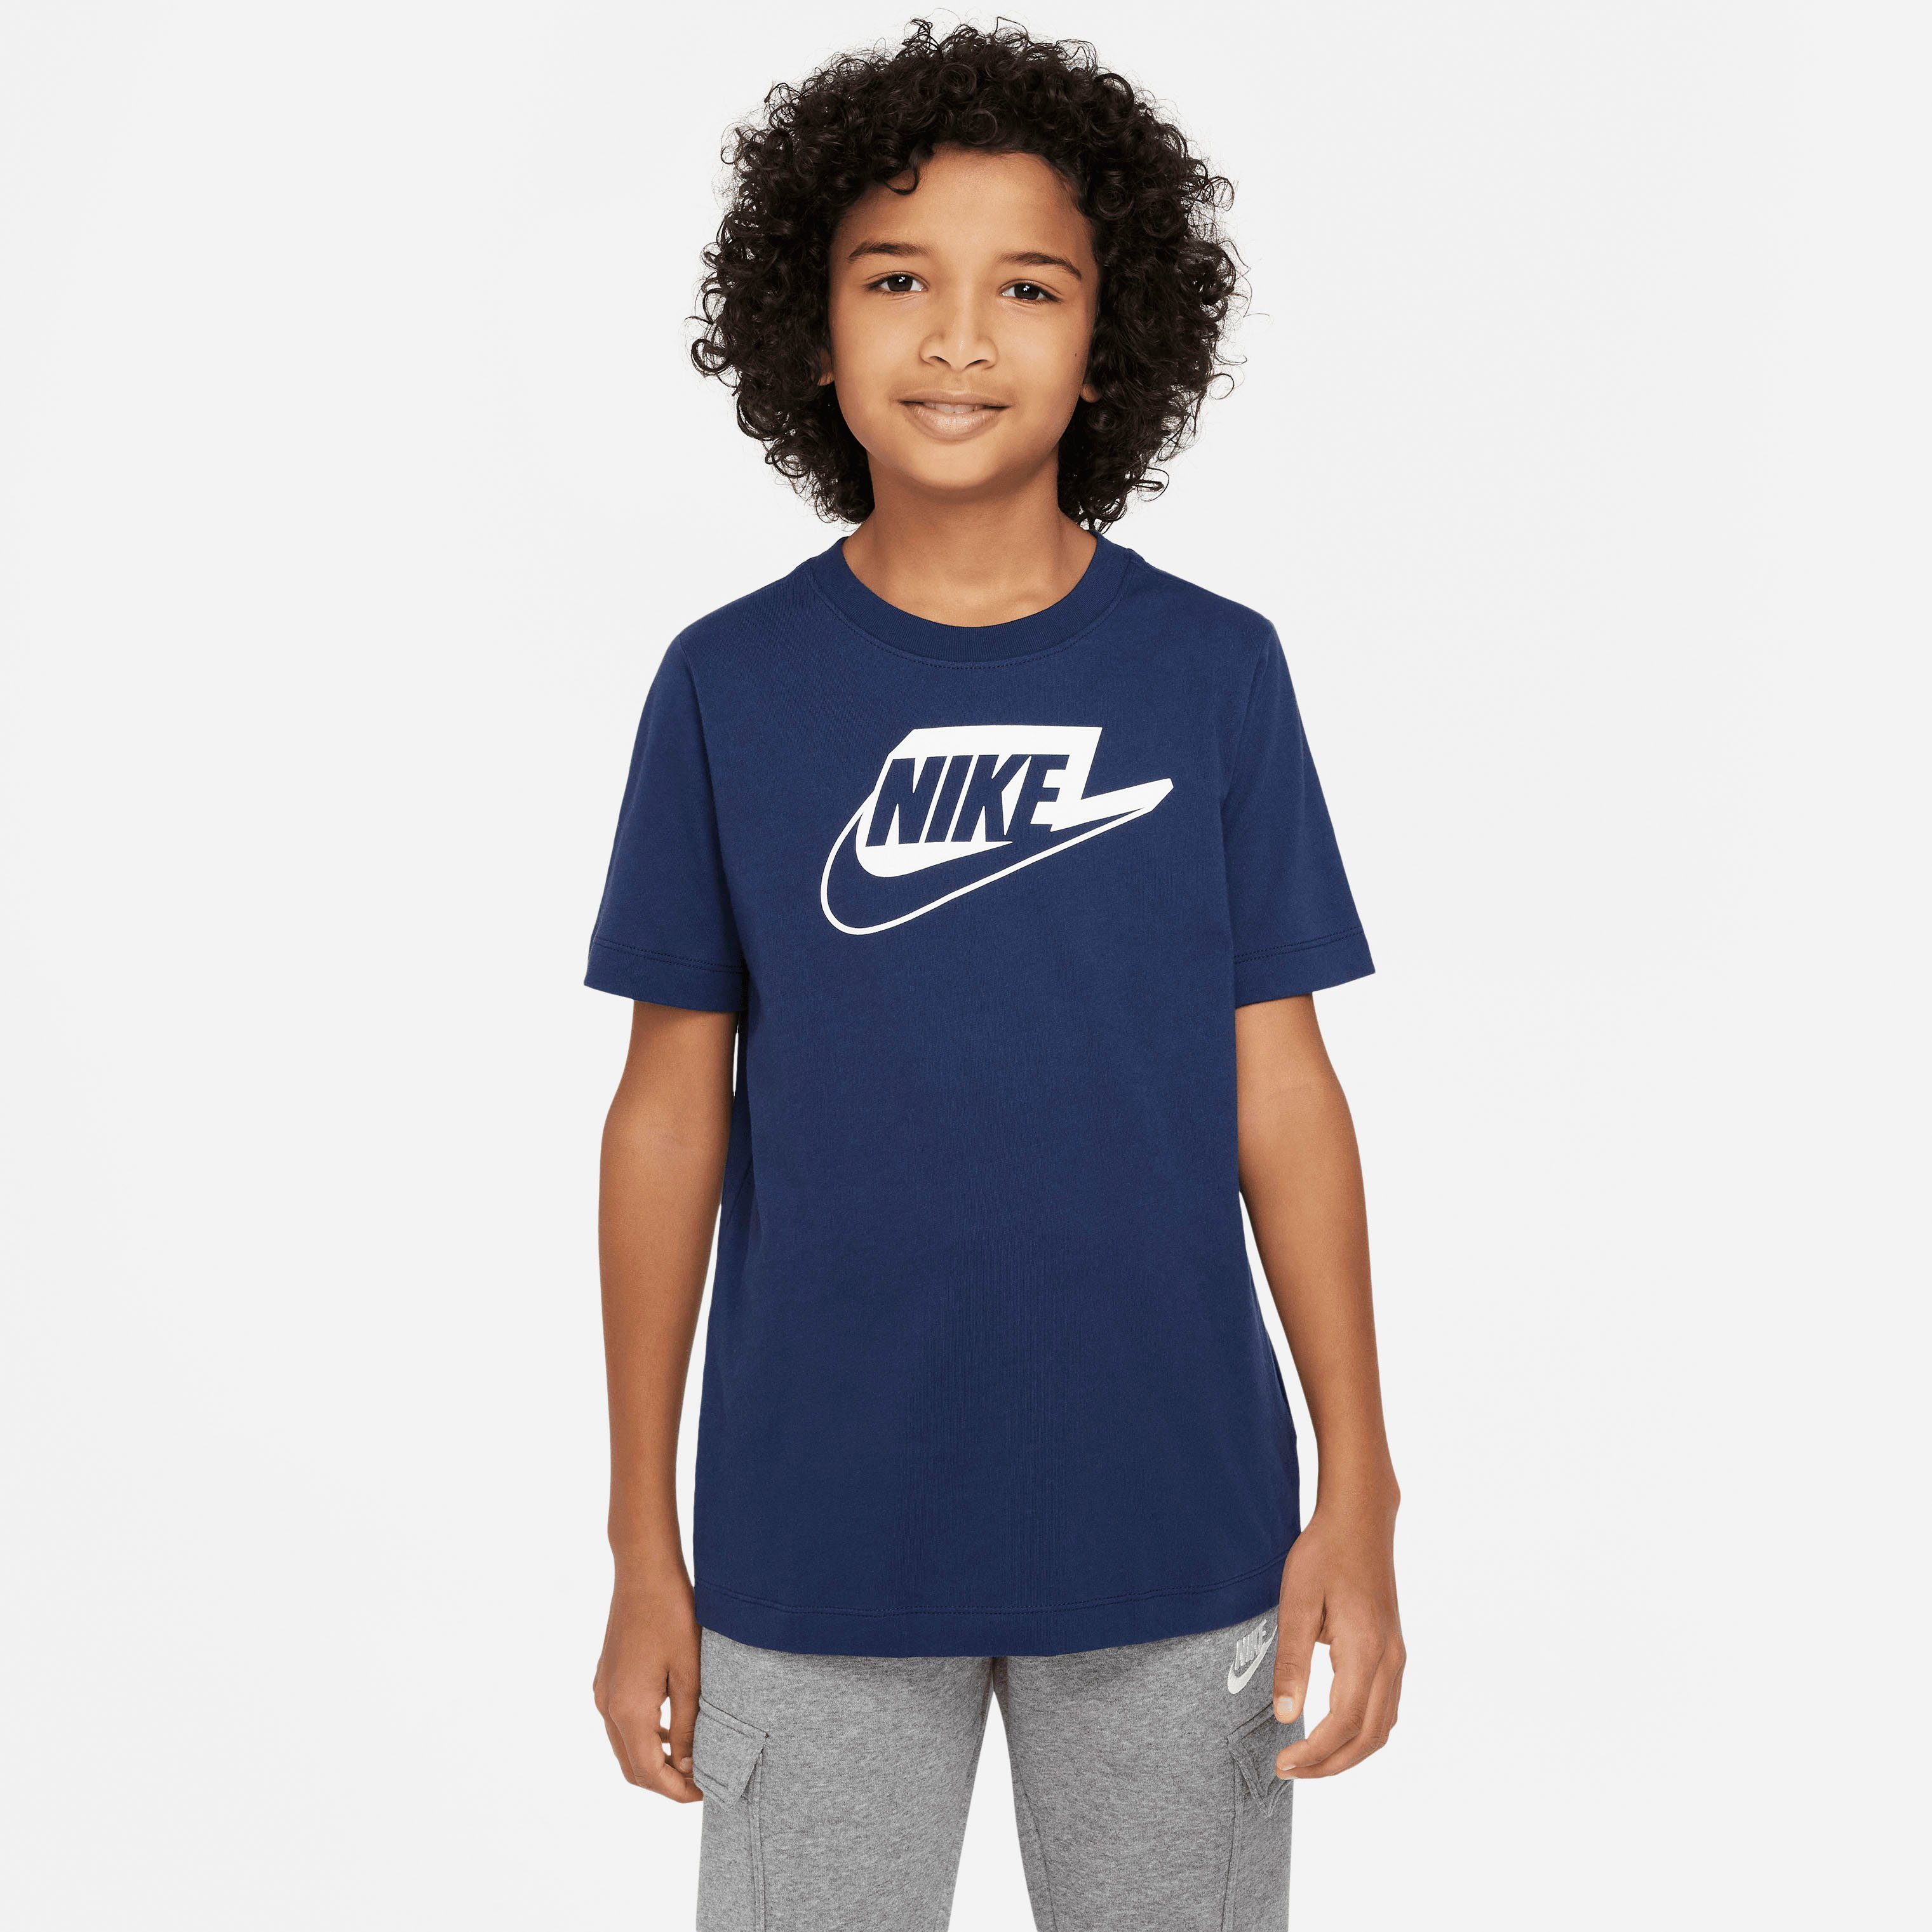 Nike Jungen Sportshirts online kaufen | OTTO